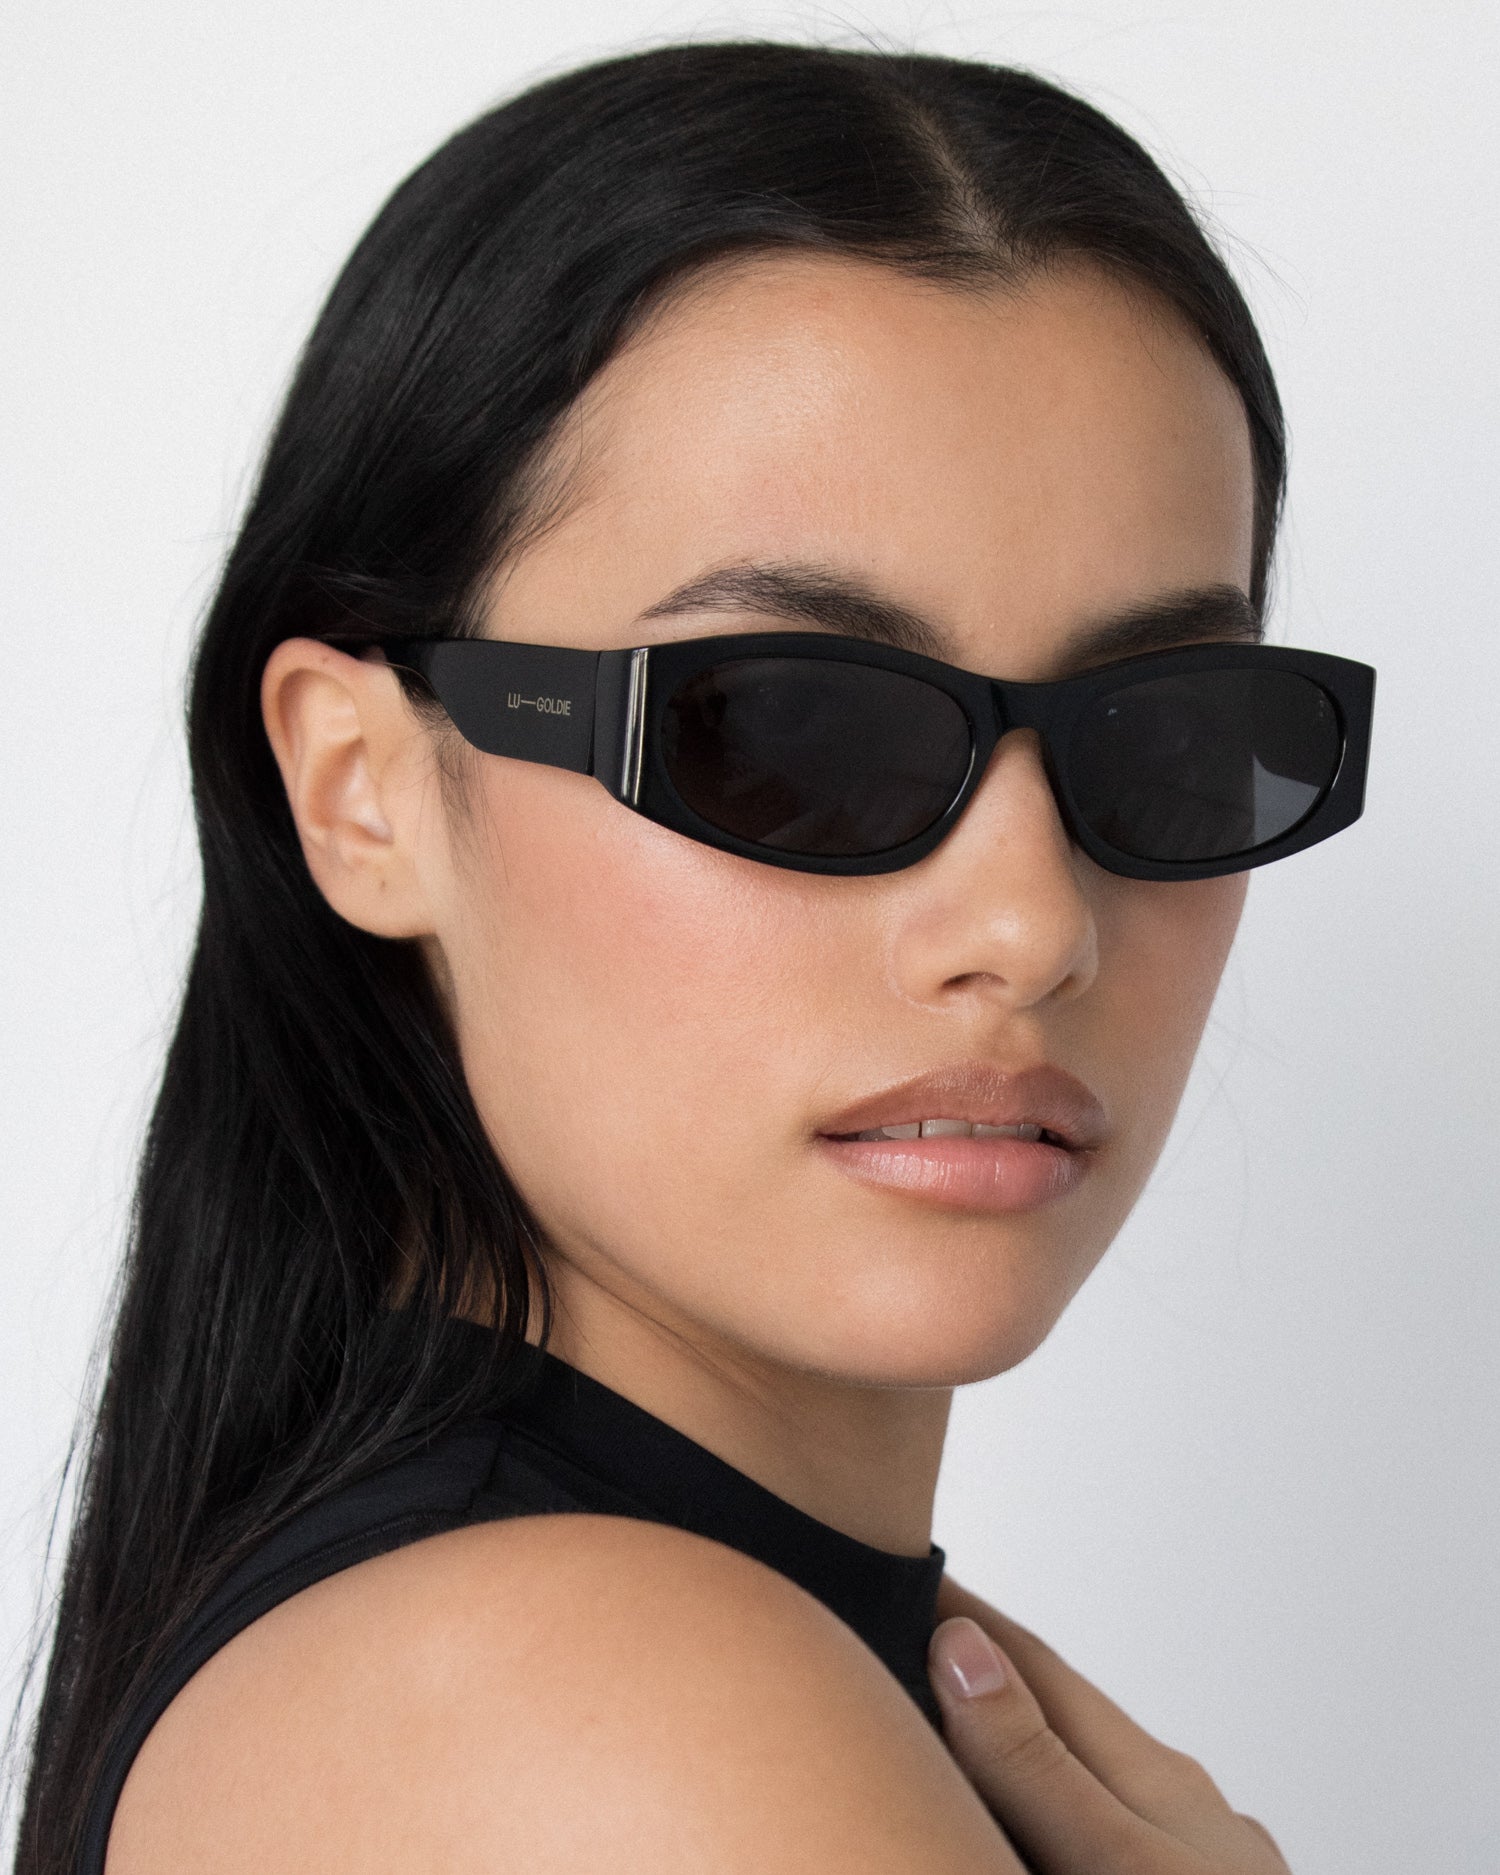 Romy Sunglasses in Black by LU GOLDIE Eyewear